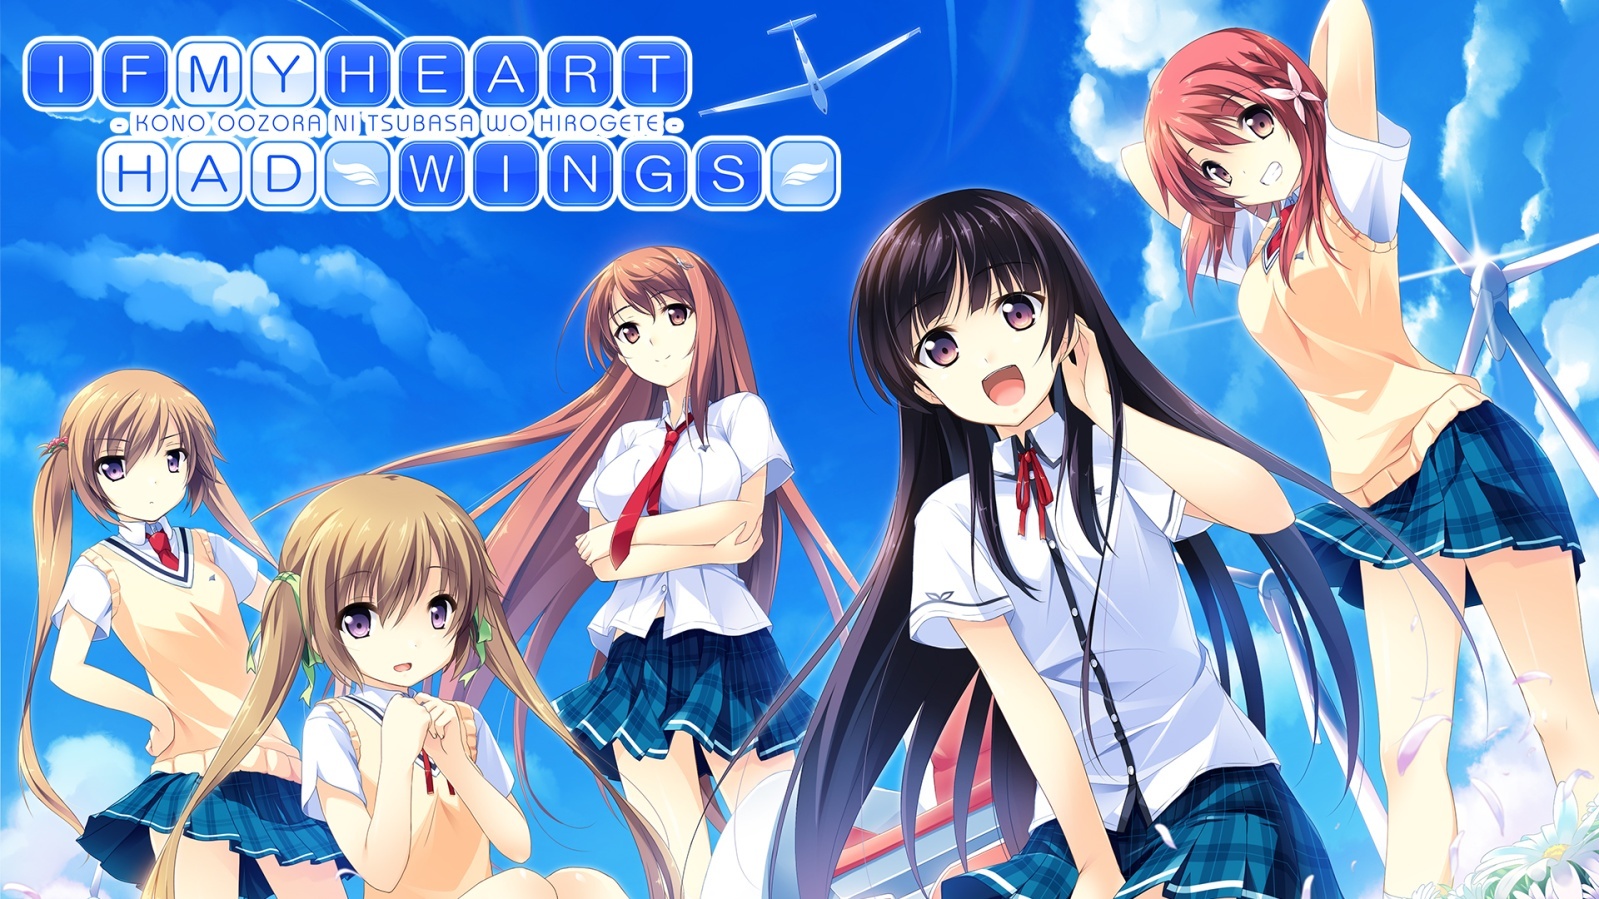 戀愛冒險遊戲 在這蒼穹展翅 Ns 版開放預約下載9 月5 日正式發售 If My Heart Had Wings 巴哈姆特